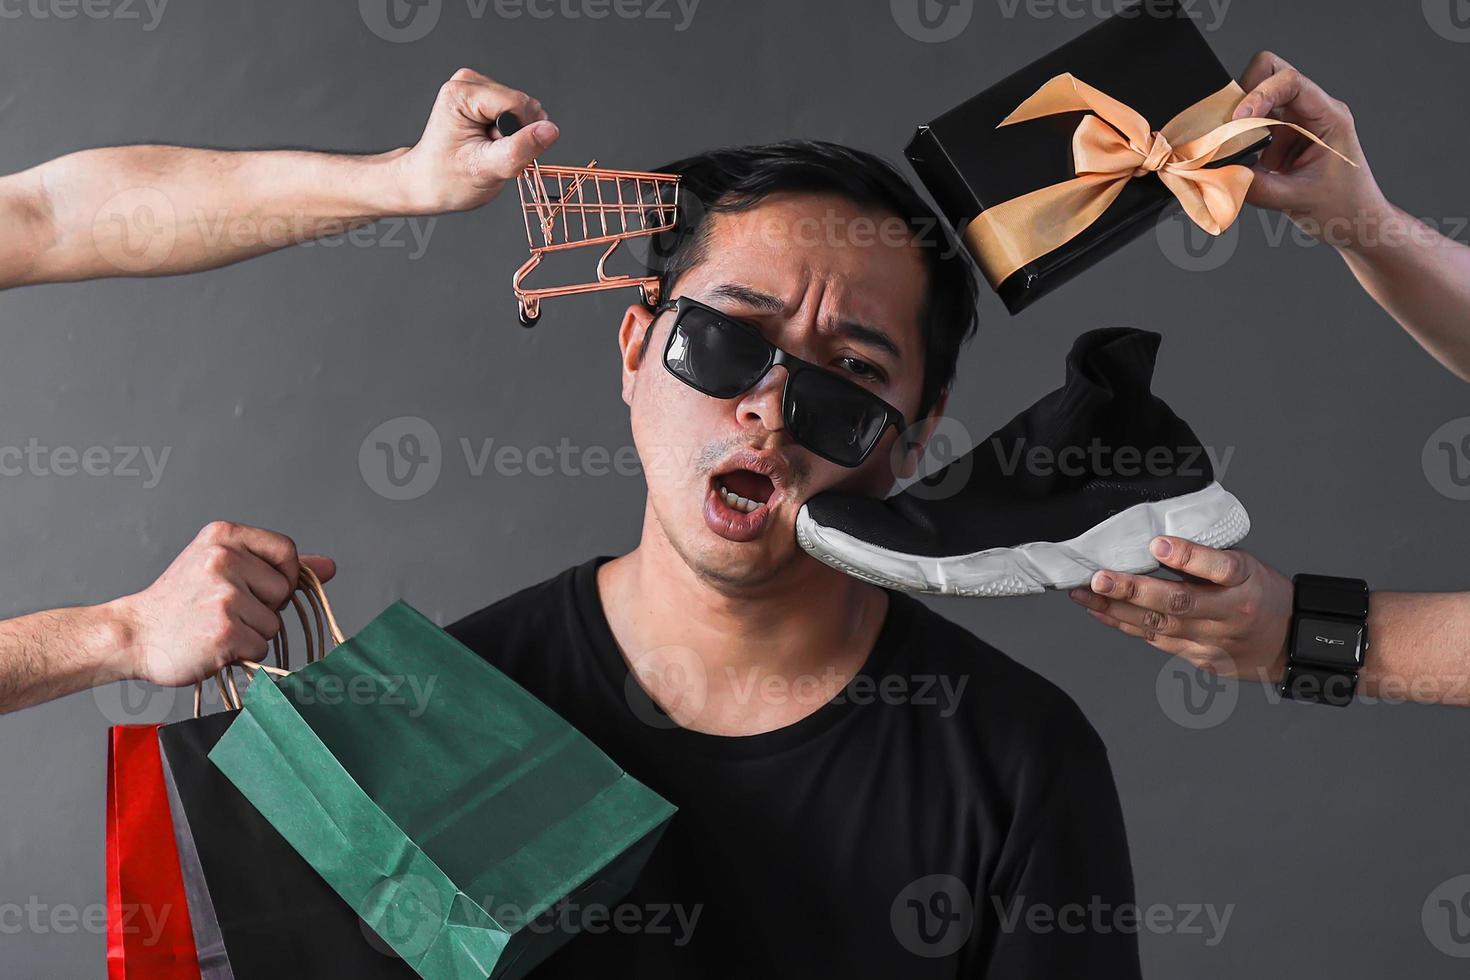 rolig online shopping säljfrämjande med fånigt uttryck shopaholic man omgiven av shopping varor och tillbehör foto